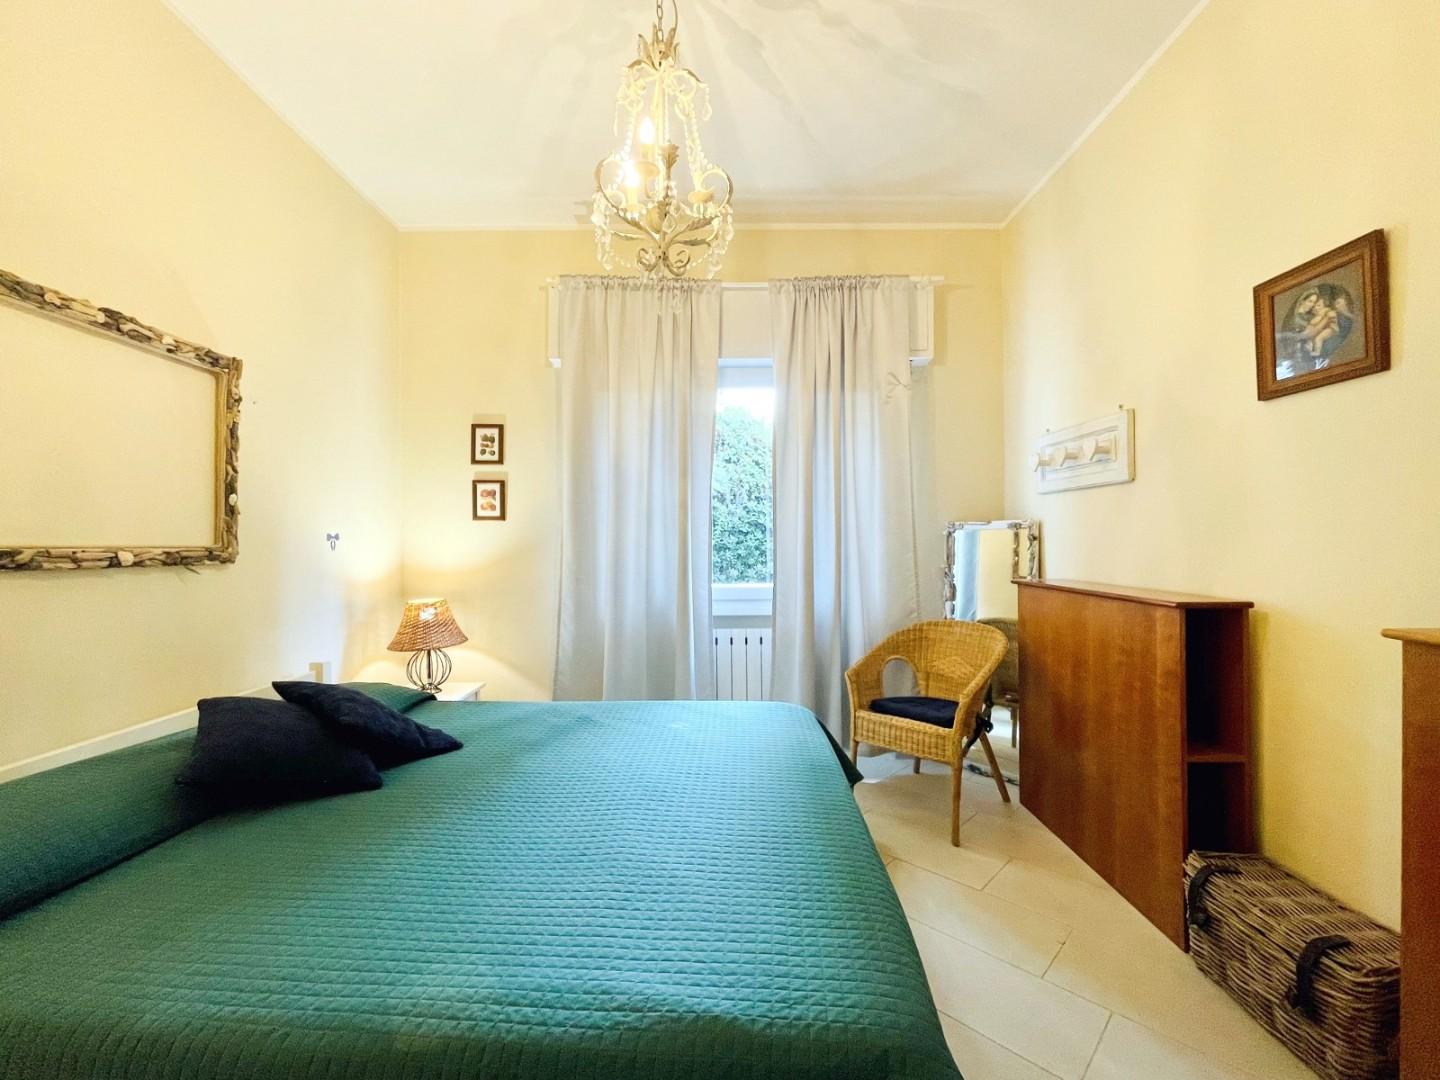 Villa singola in vendita - Fiumetto, Pietrasanta